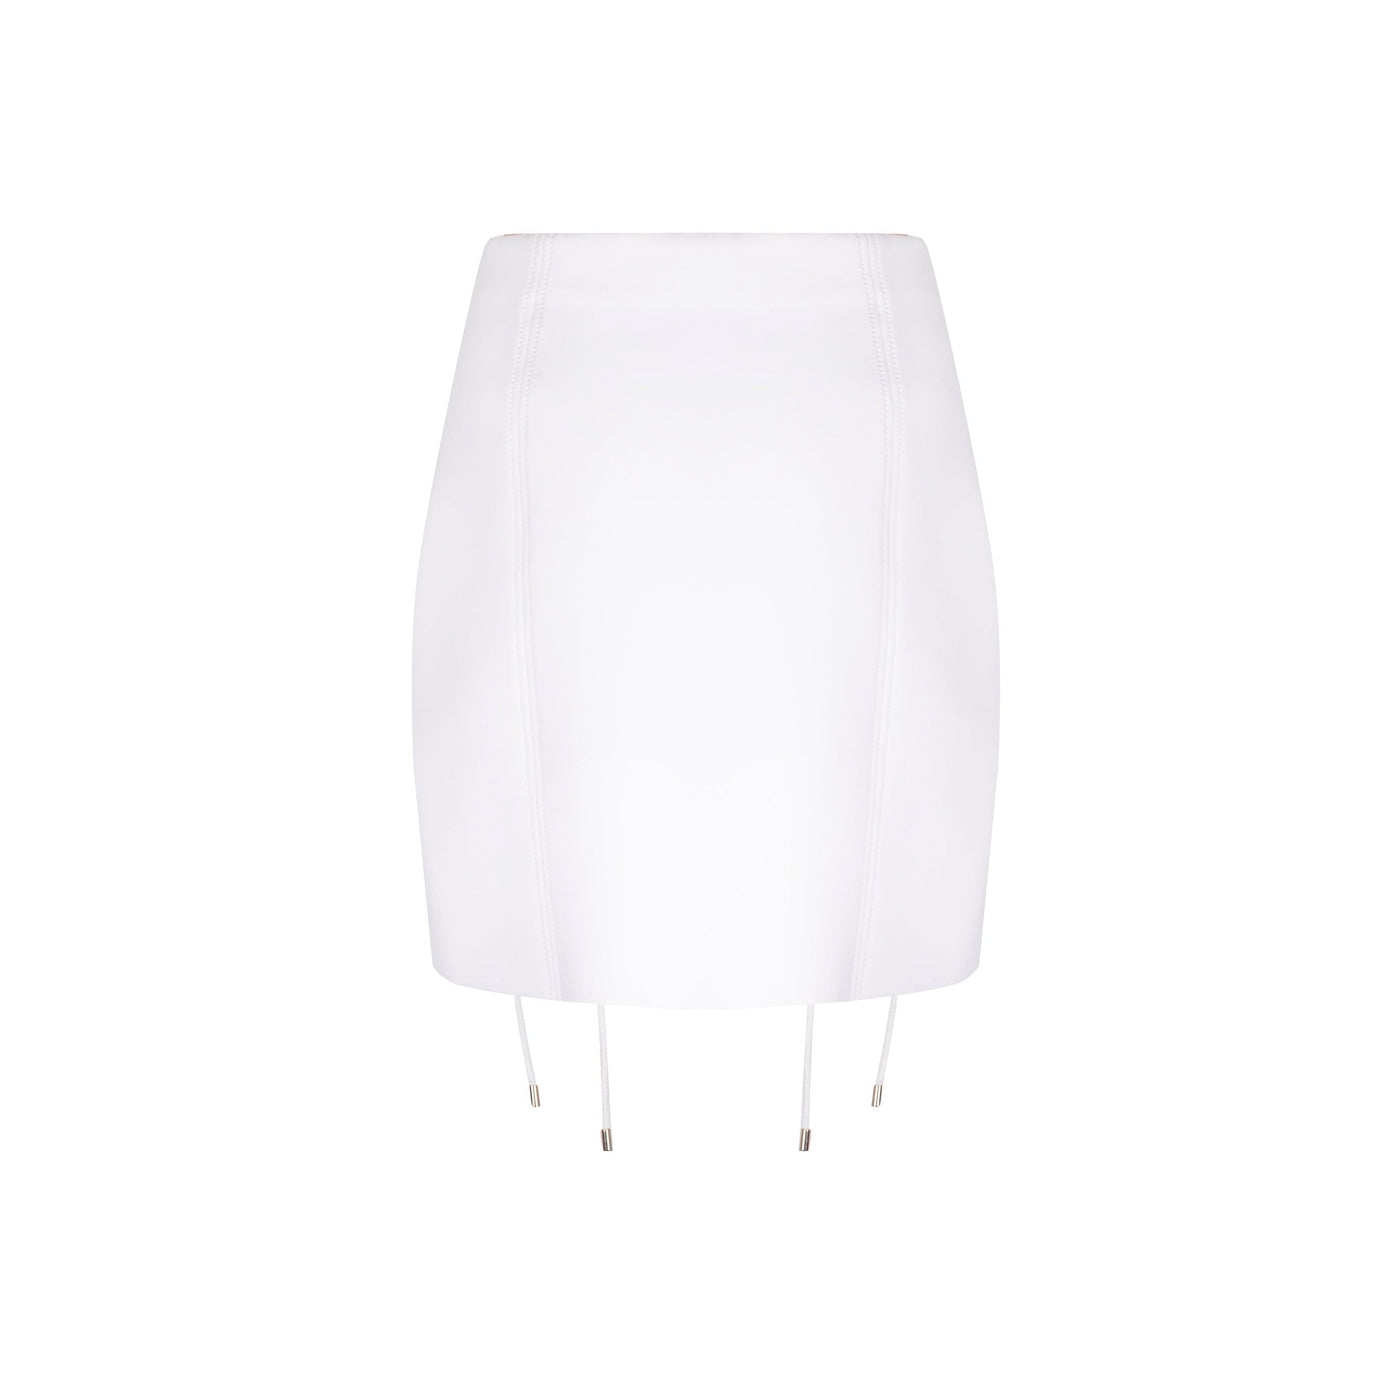 The Lubiana Skirt